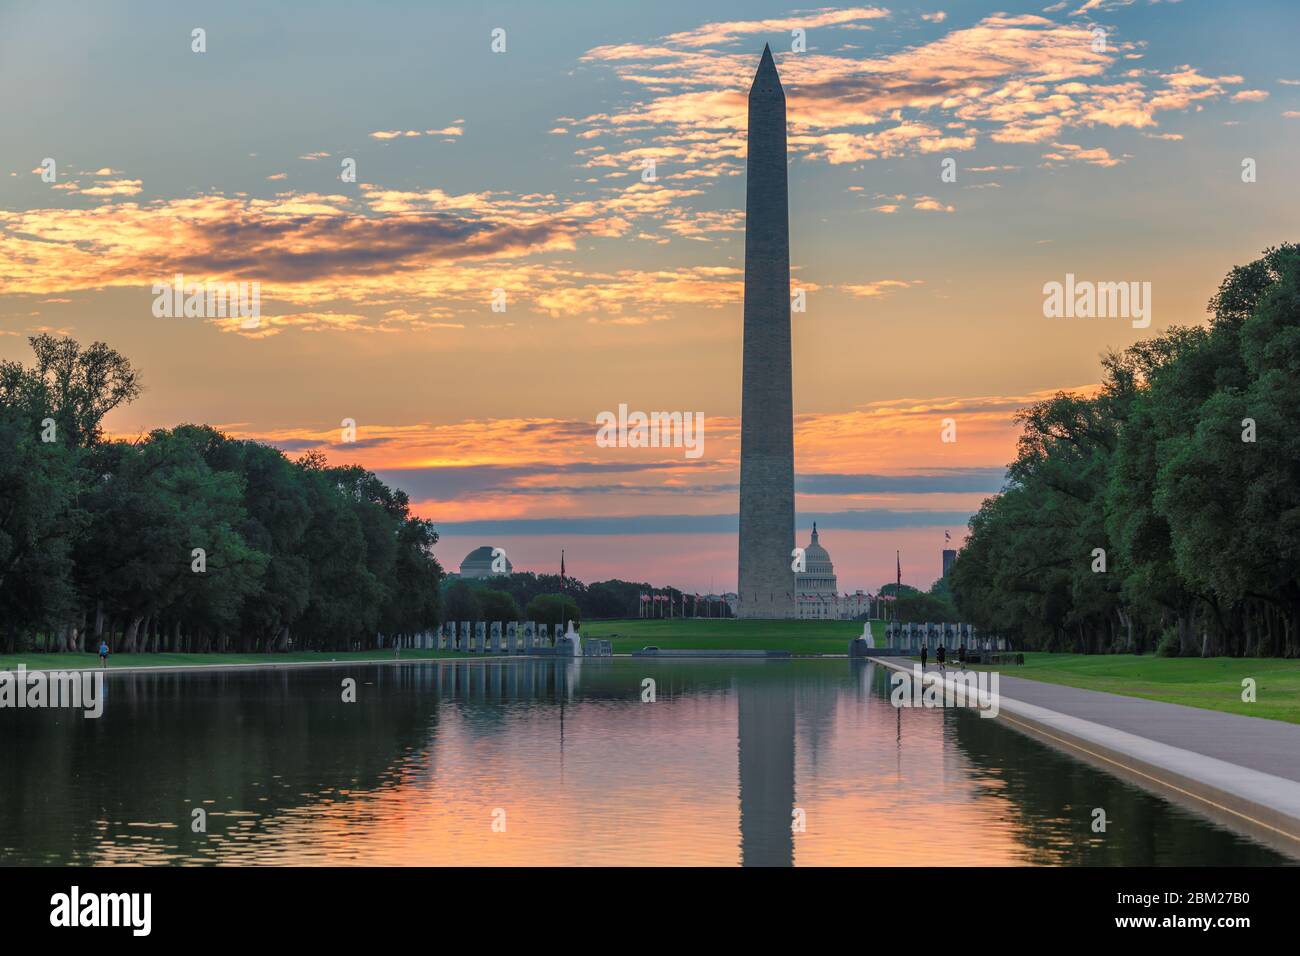 El Monumento a Washington al amanecer, Washington DC, Estados Unidos. Foto de stock